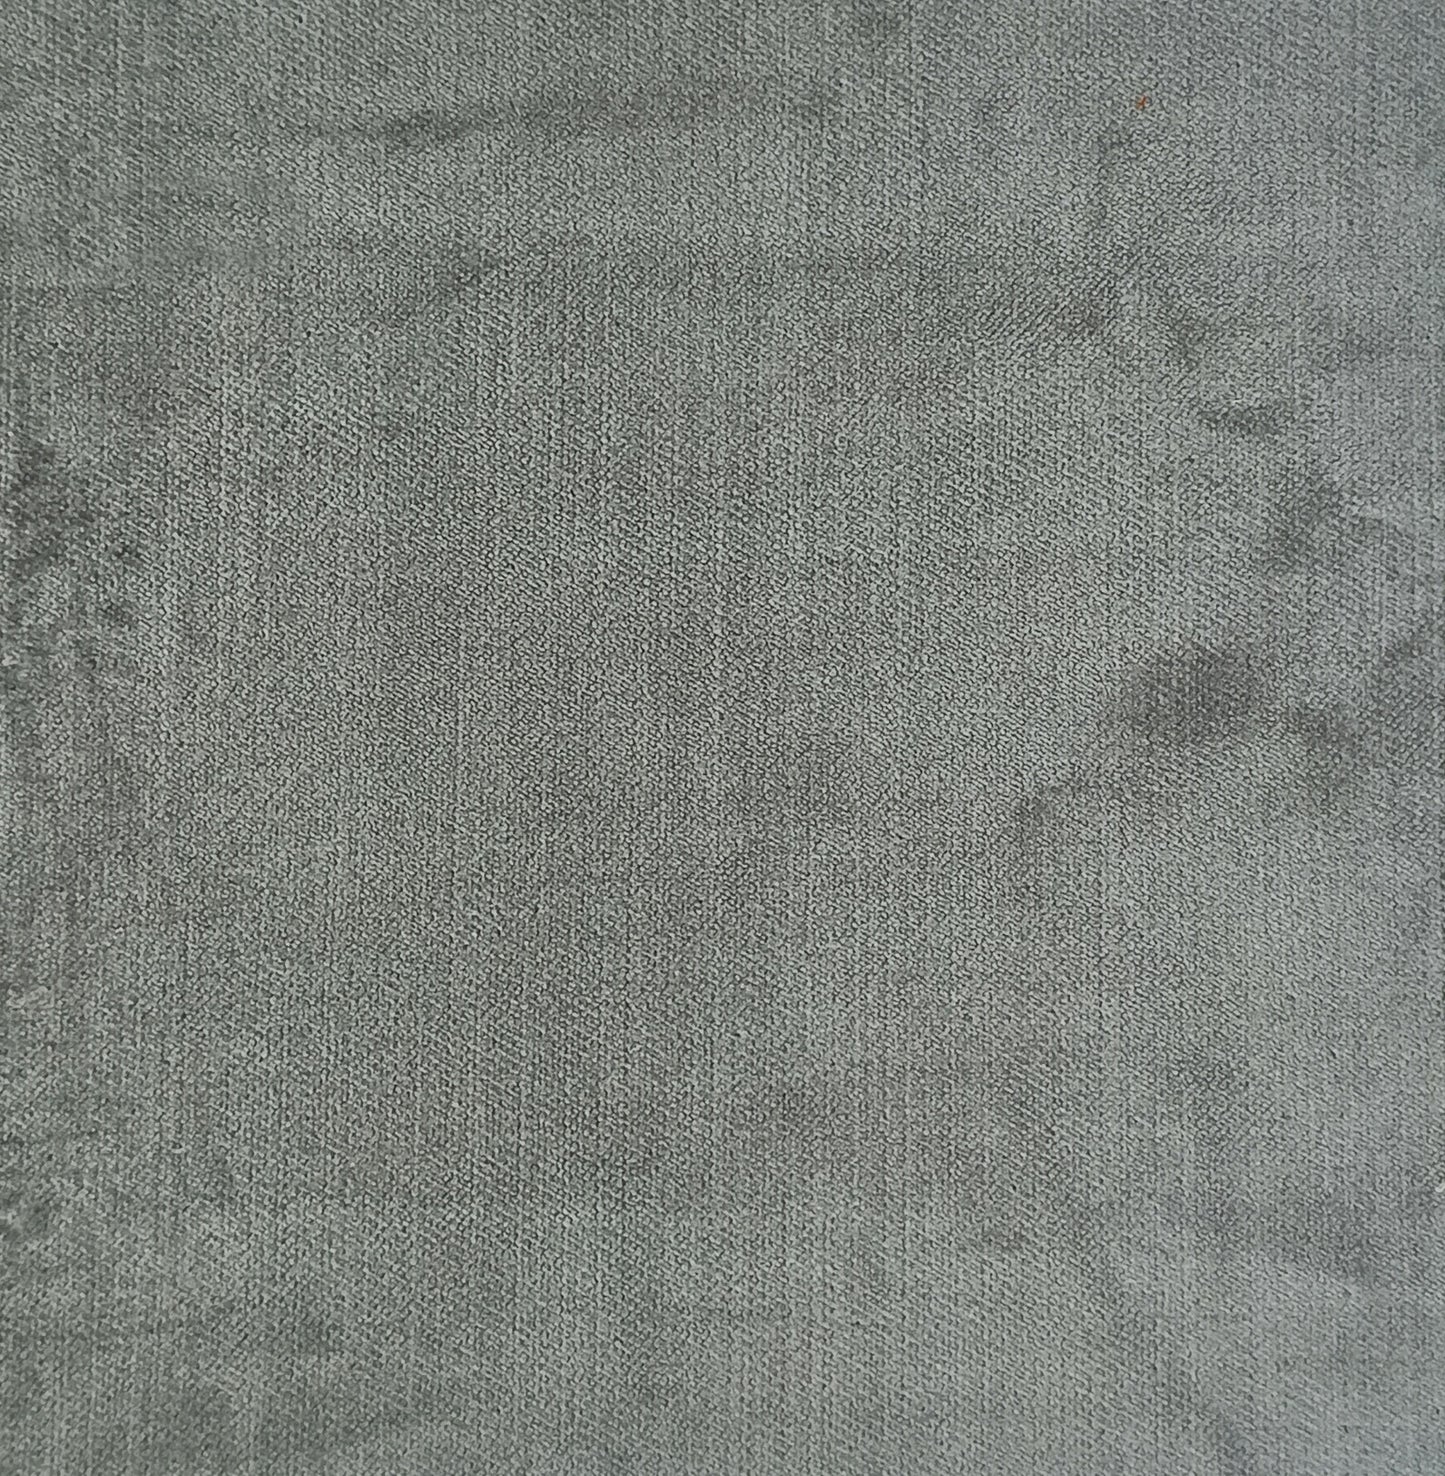 Silver grey velvet upholstery fabric